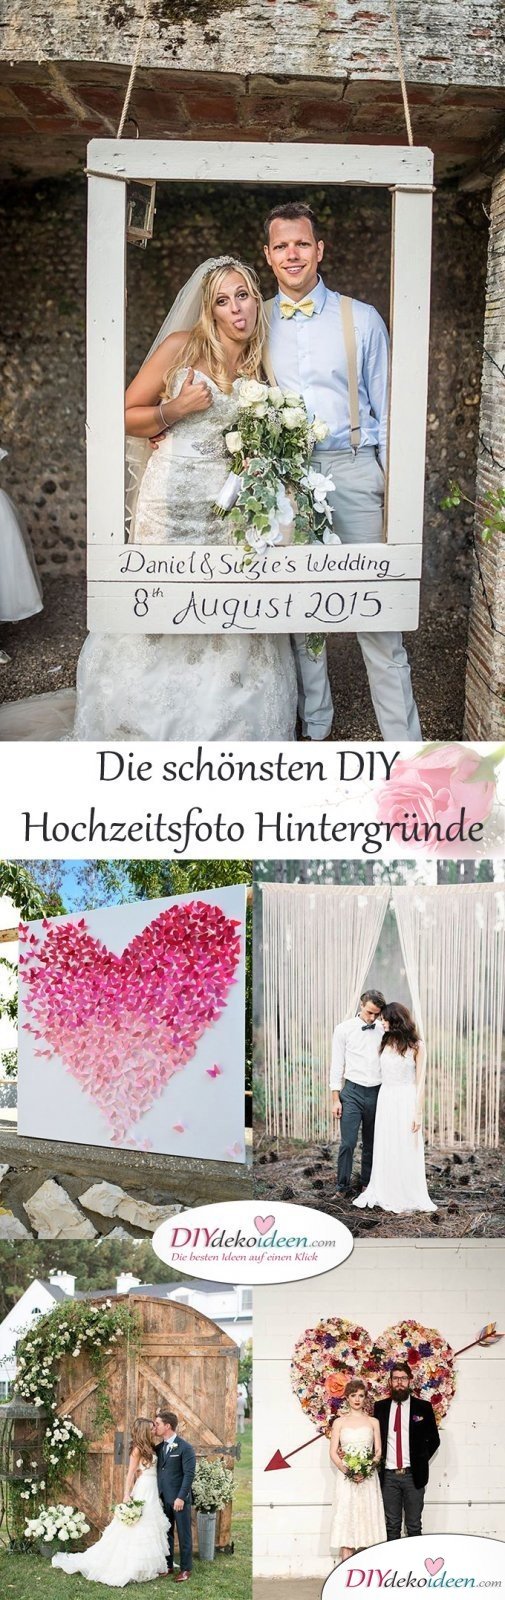  DIY Dekoideen für den perfekten Hochzeitsfoto Hintergrund